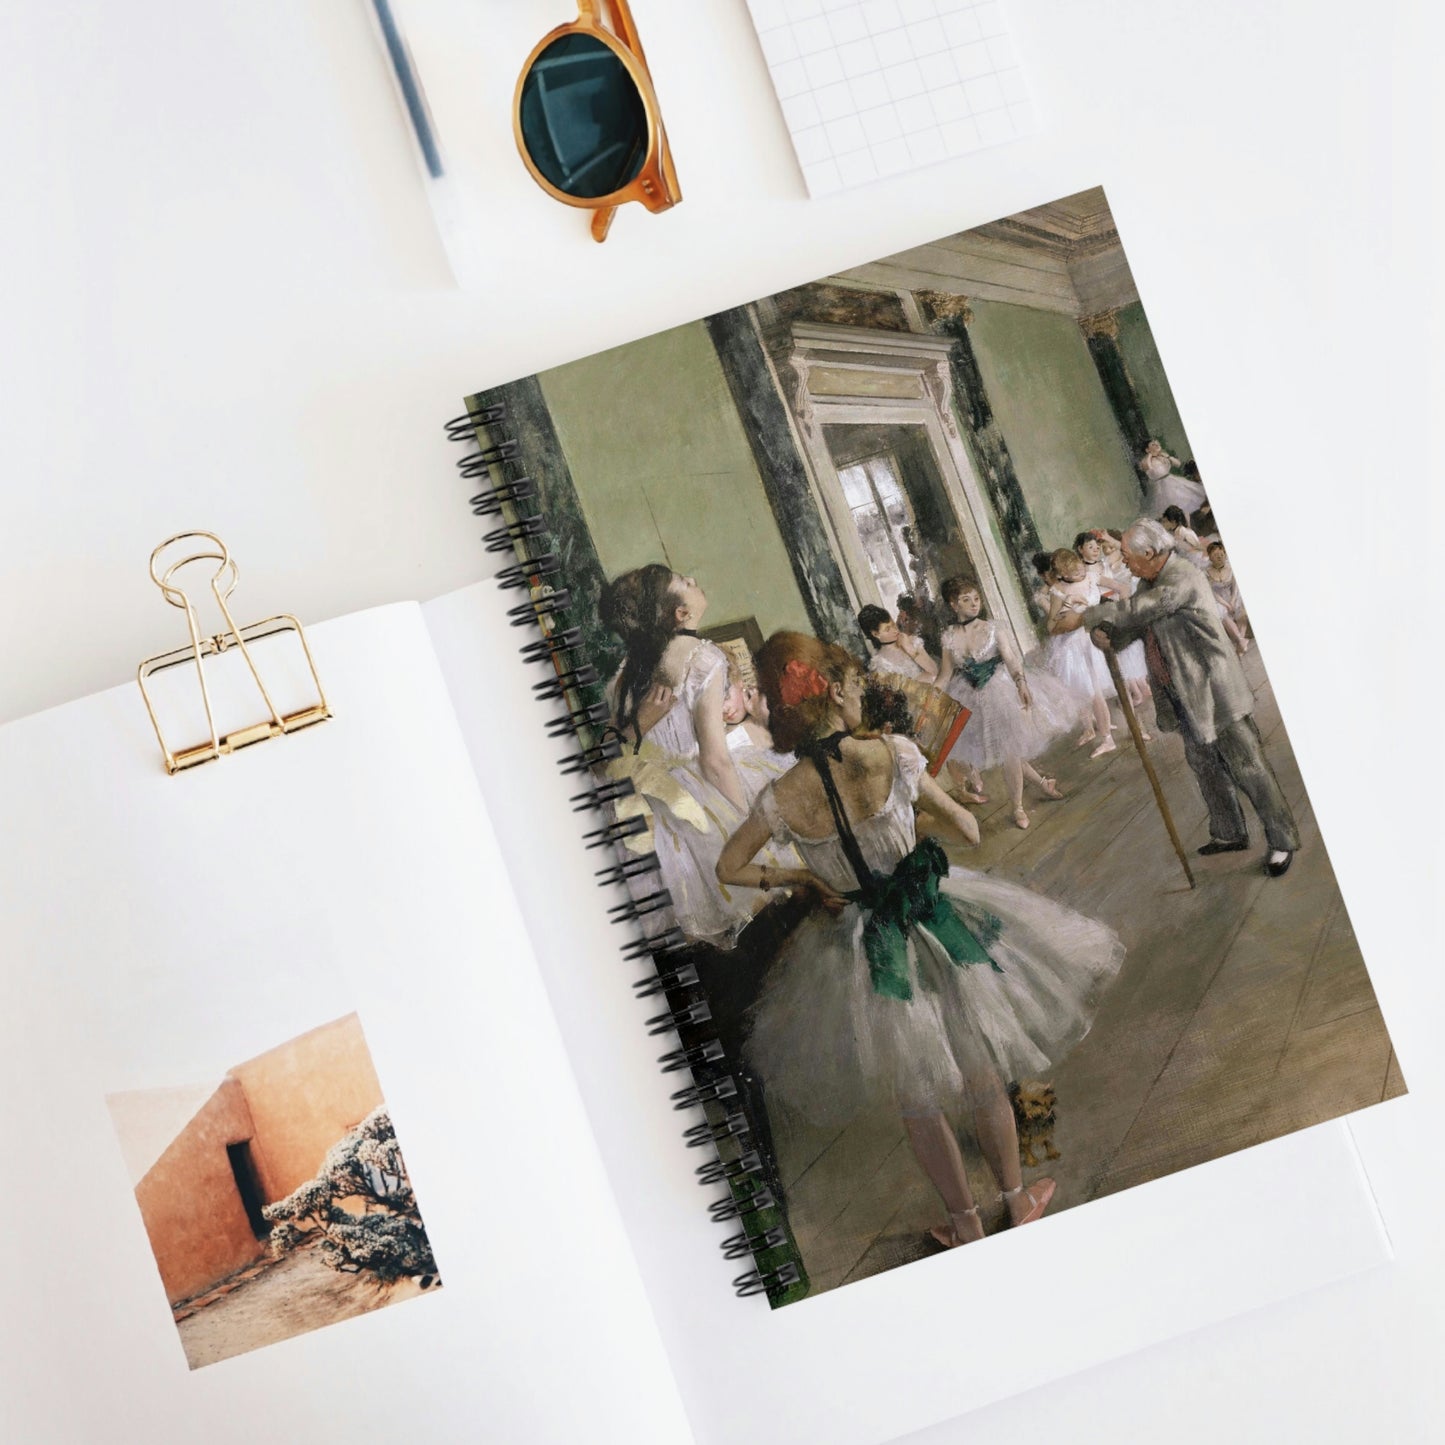 Spiral Notebook La Classe de danse by Edgar Degas - Ruled Line